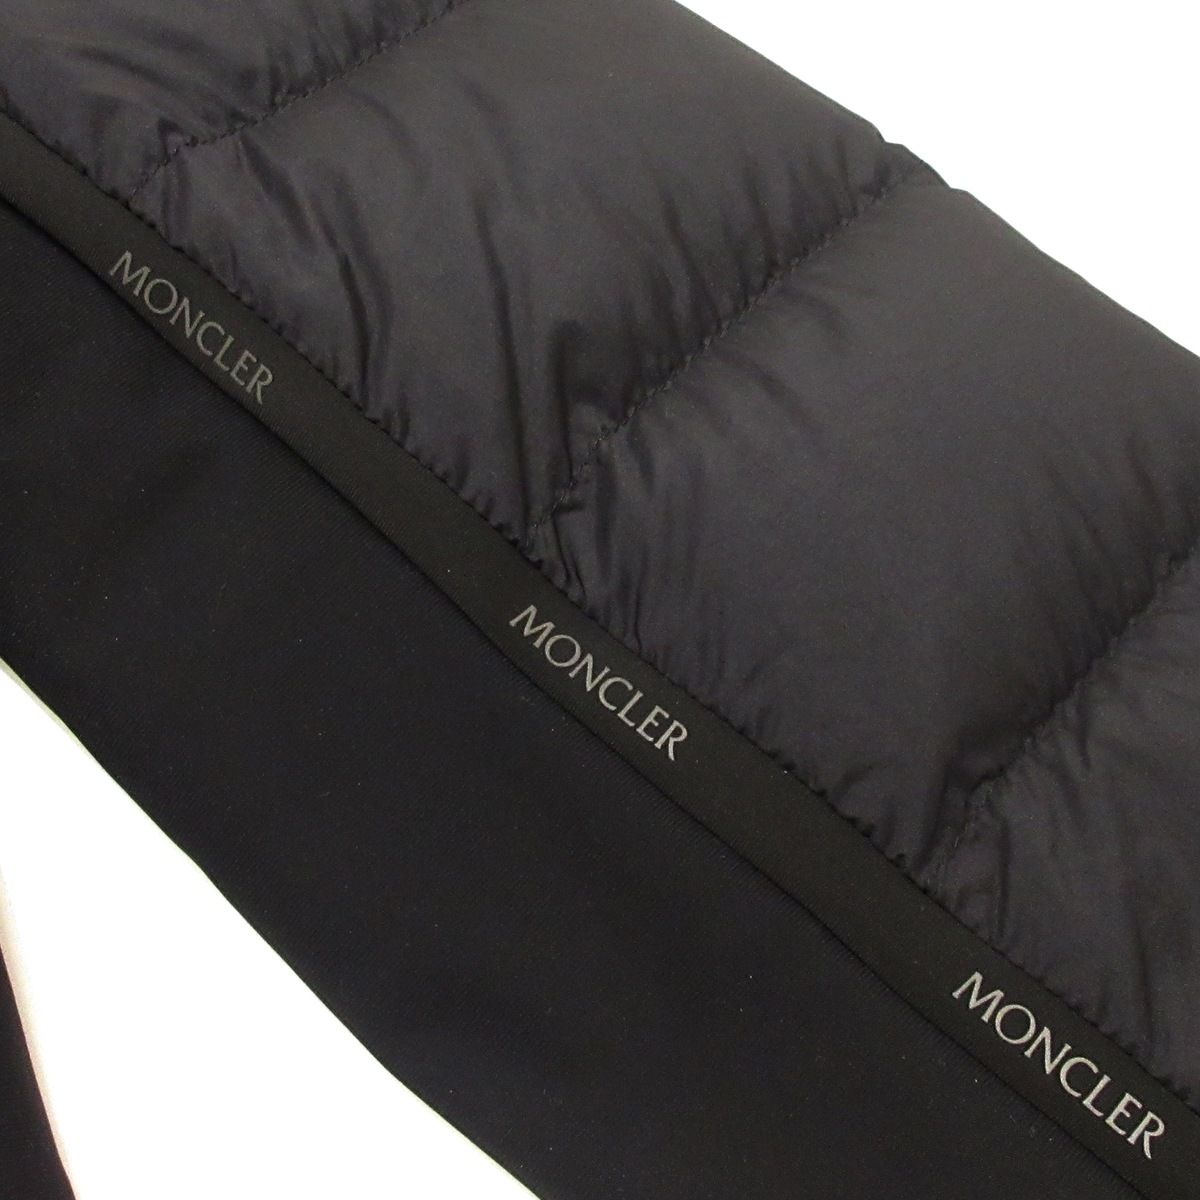 MONCLER(モンクレール) ダウンジャケット サイズ3 L メンズ美品 MORVAN